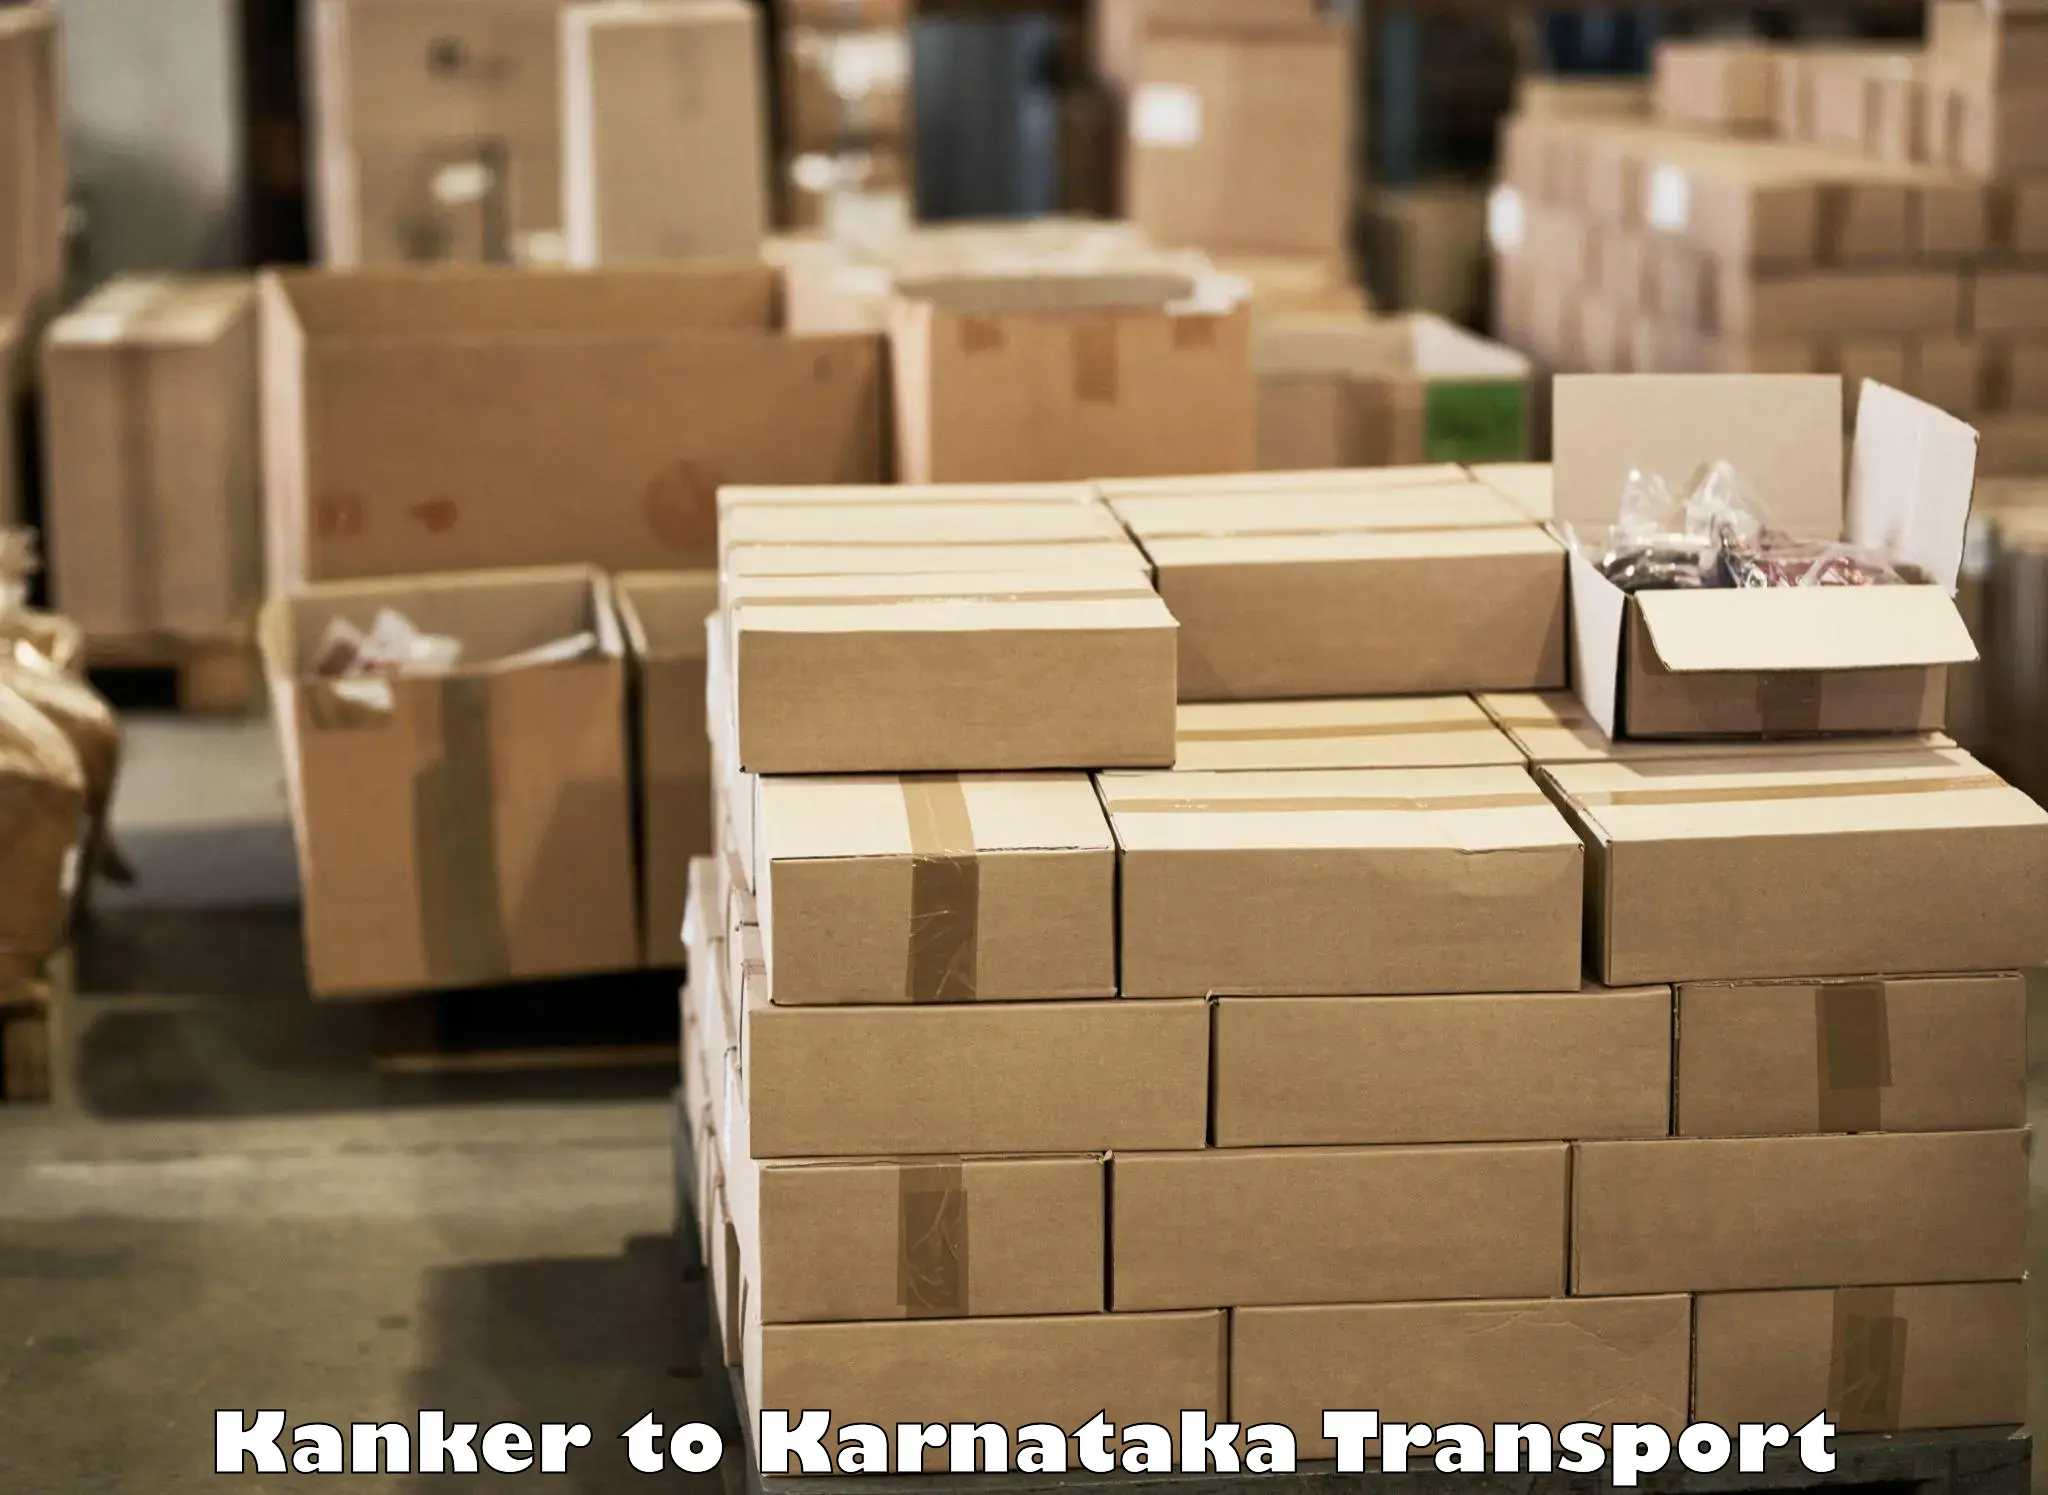 Pick up transport service Kanker to Shorapur